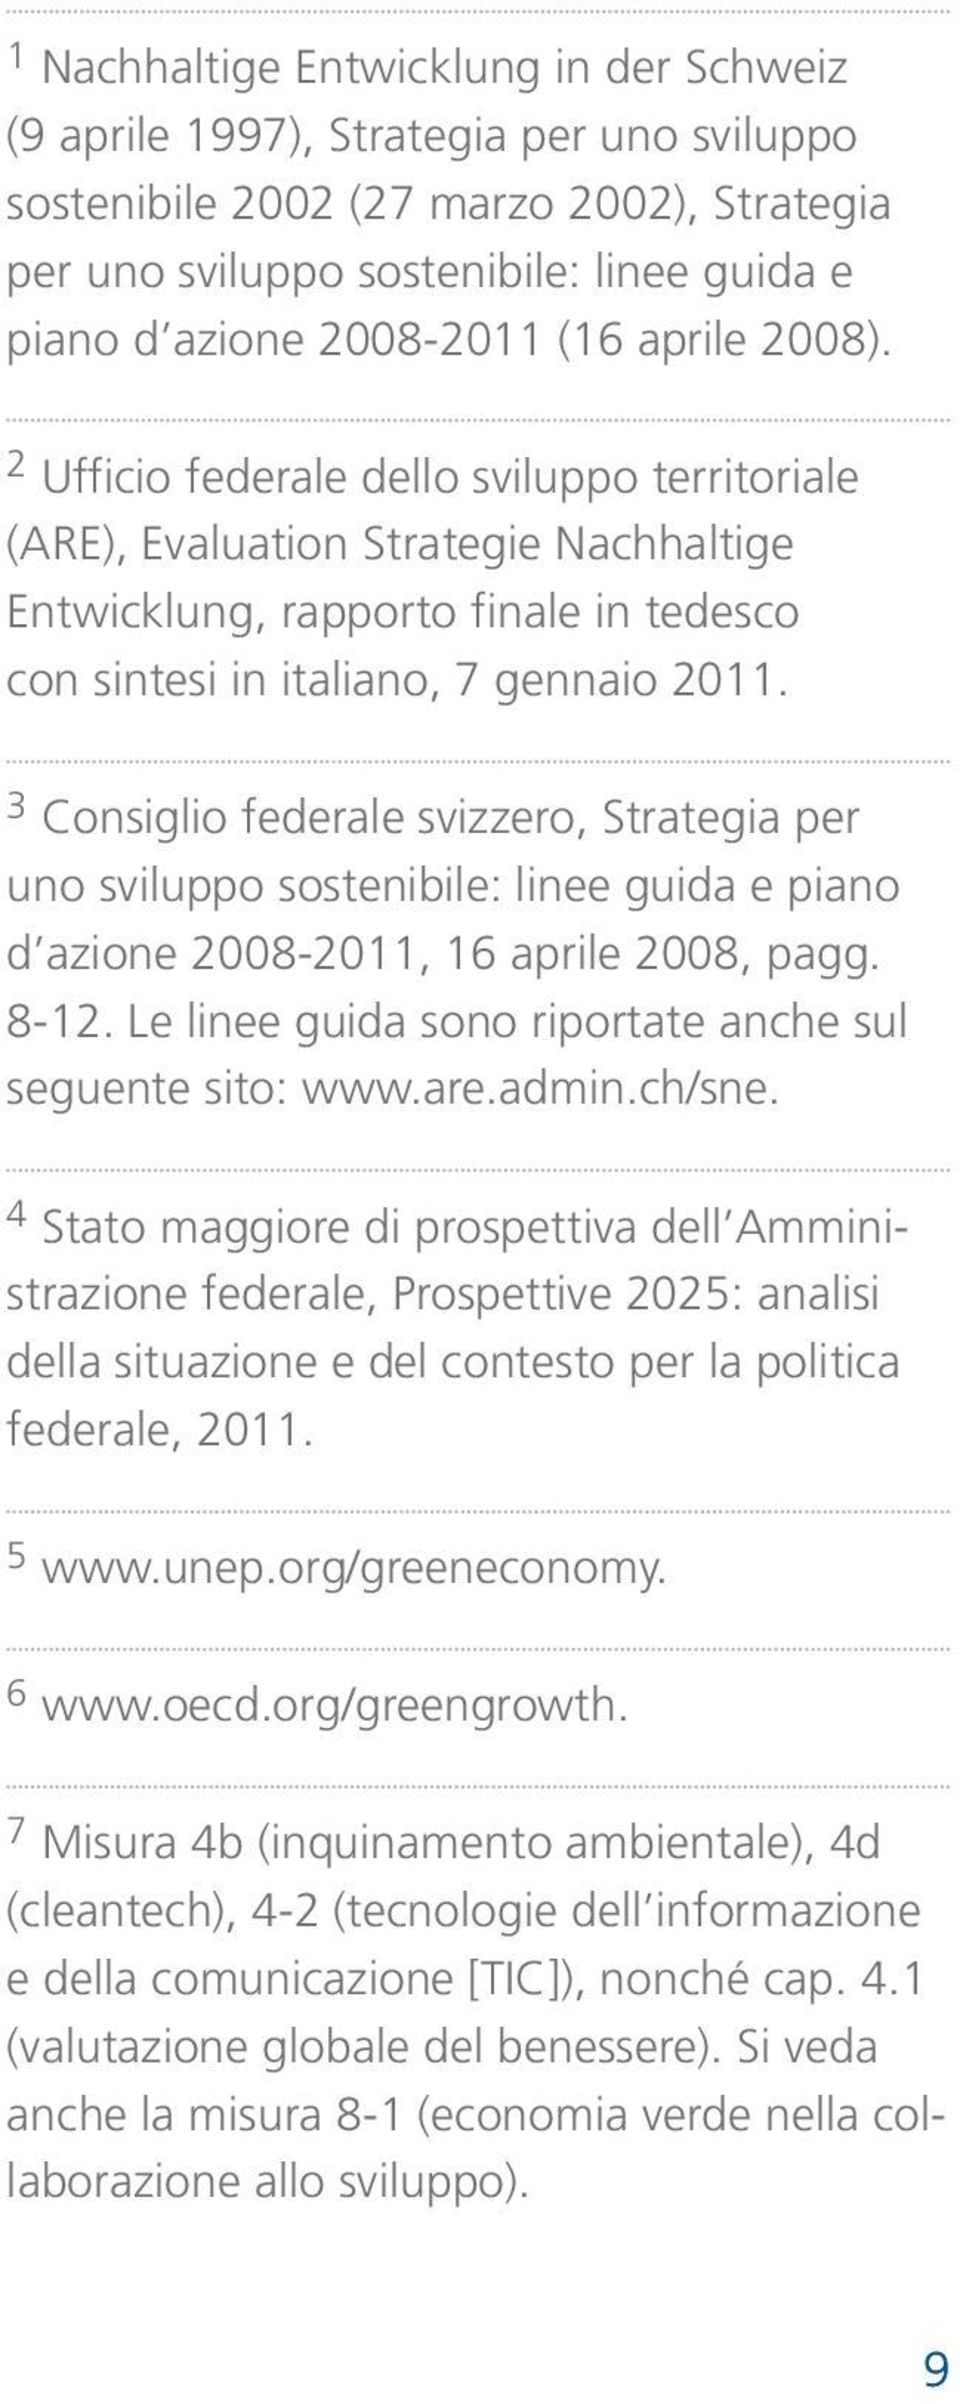 3 Consiglio federale svizzero, Strategia per uno sviluppo sostenibile: linee guida e piano d azione 2008-2011, 16 aprile 2008, pagg. 8-12. Le linee guida sono riportate anche sul seguente sito: www.